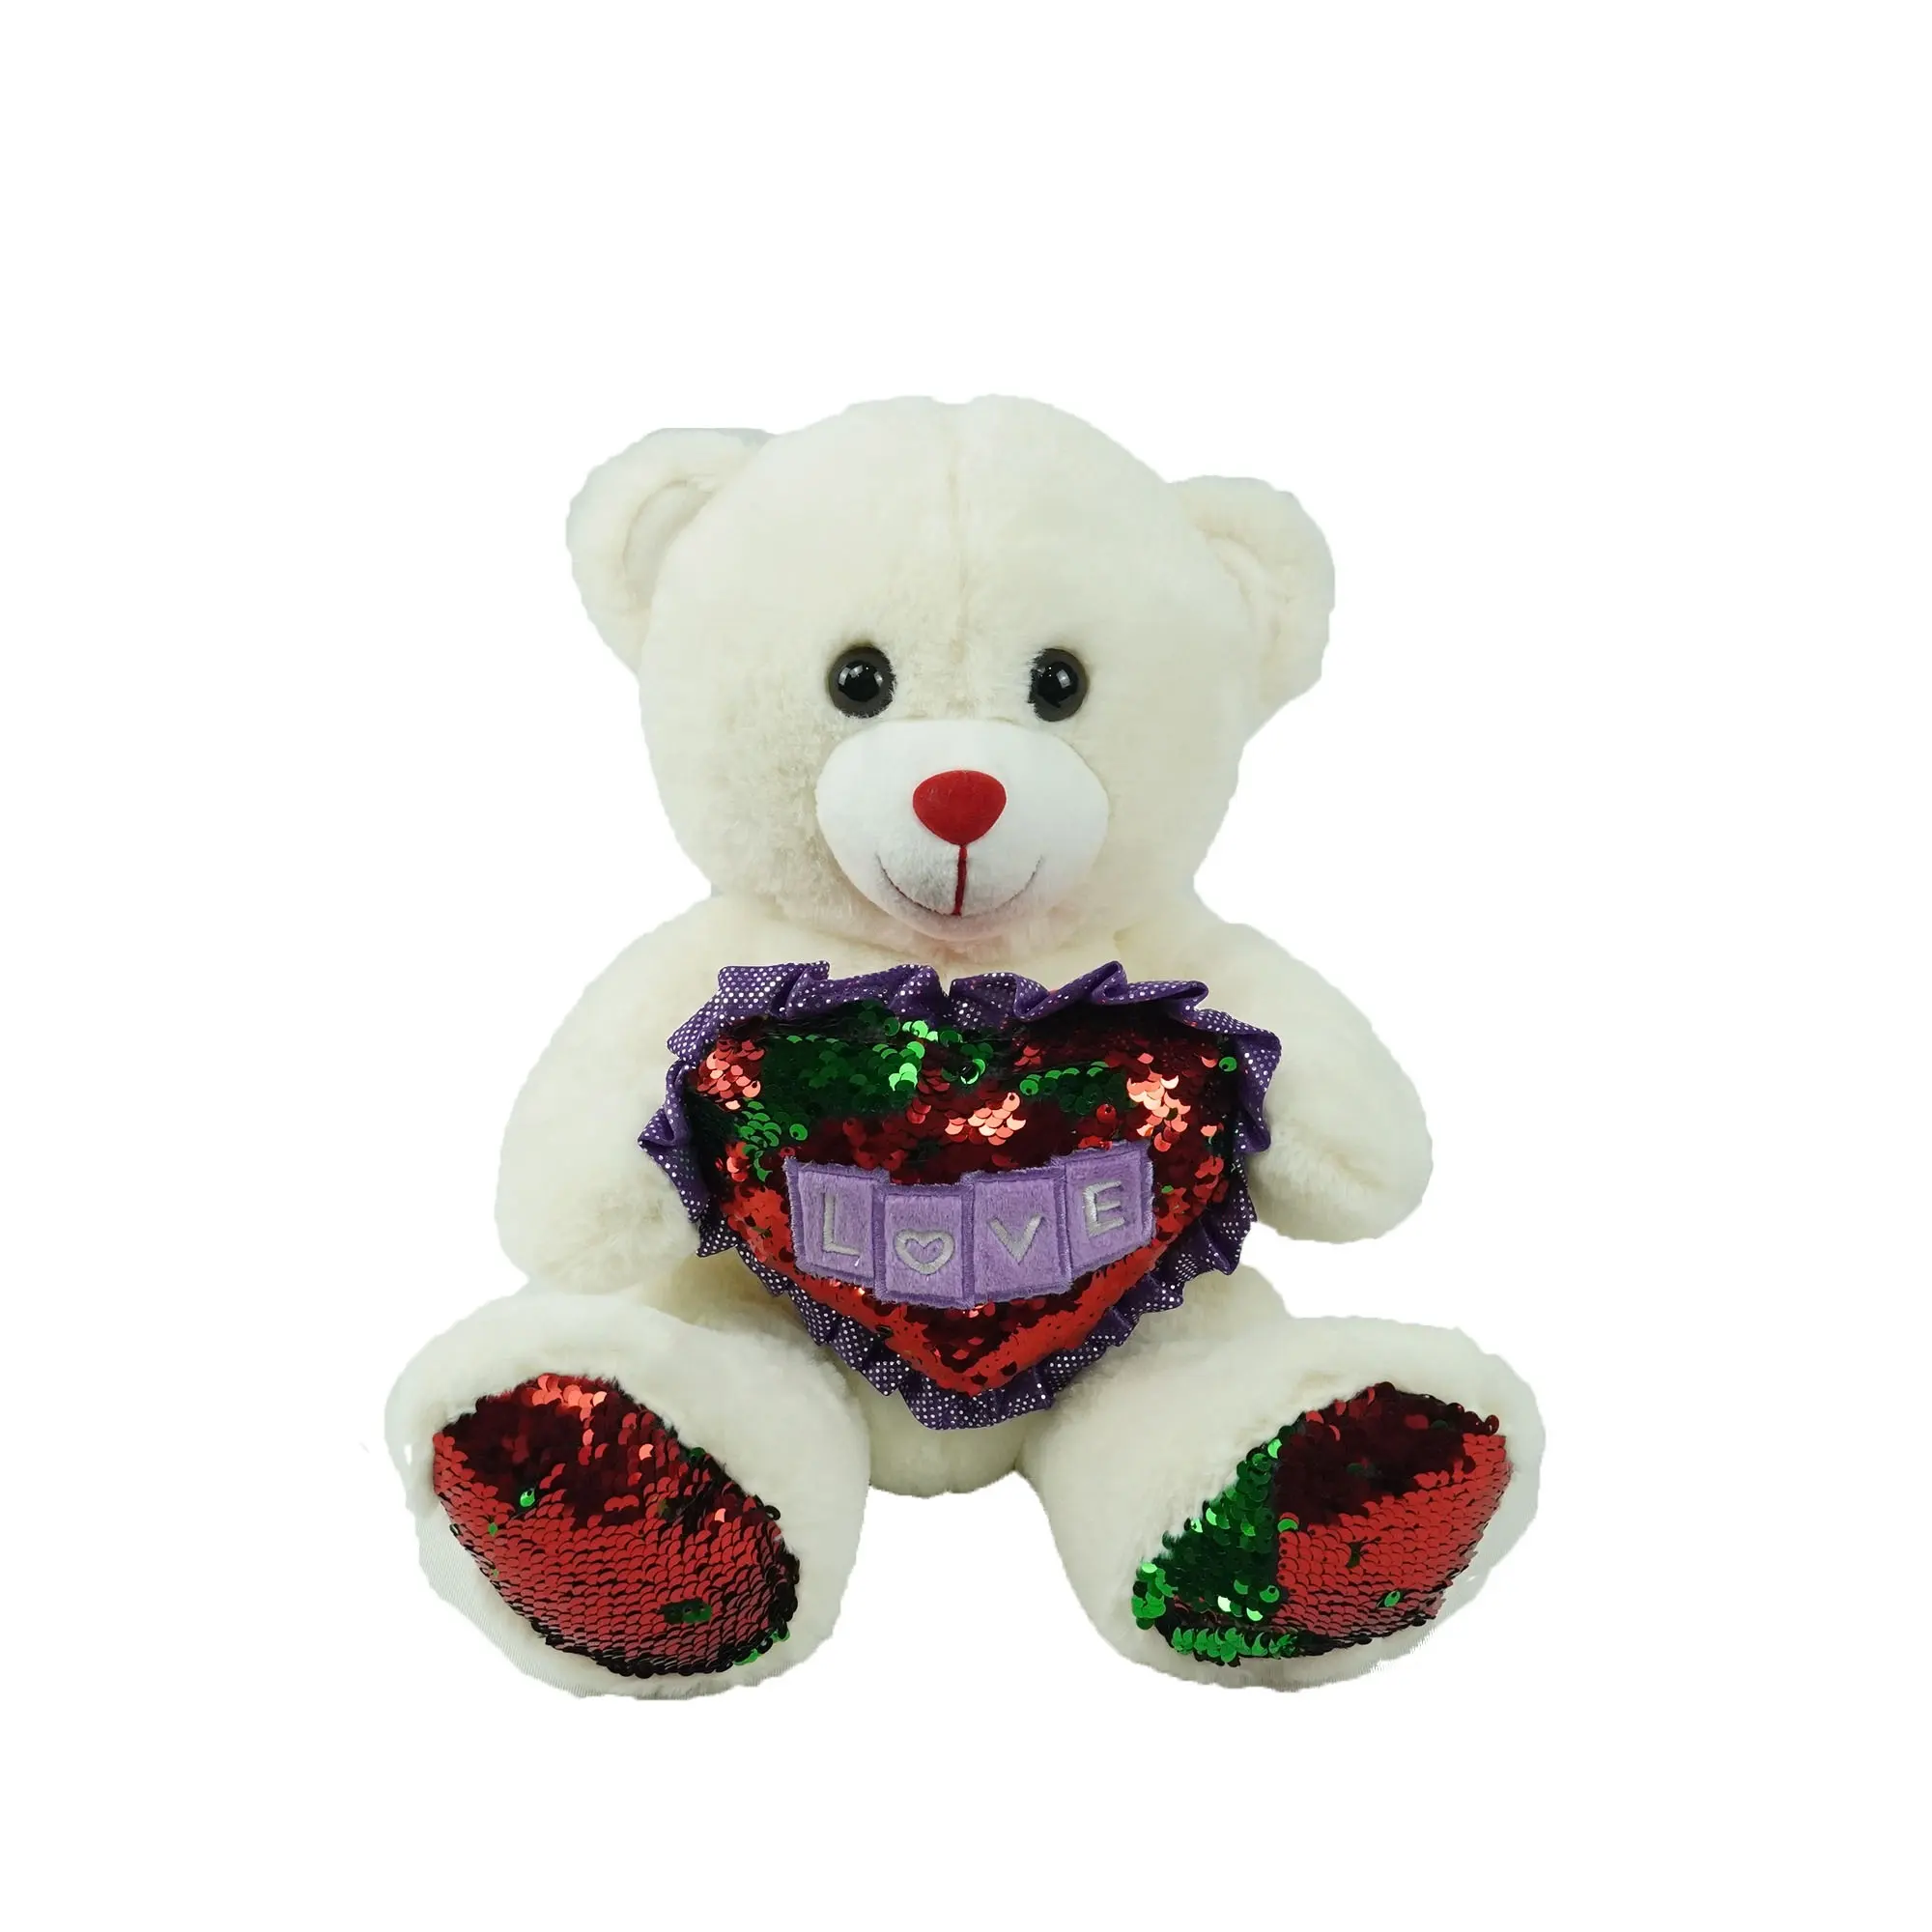 빨간 녹색 Sequin 심장 견면 벨벳 장난감을 가진 발렌타인 연인 선물 주문을 받아서 만들어진 테디 베어